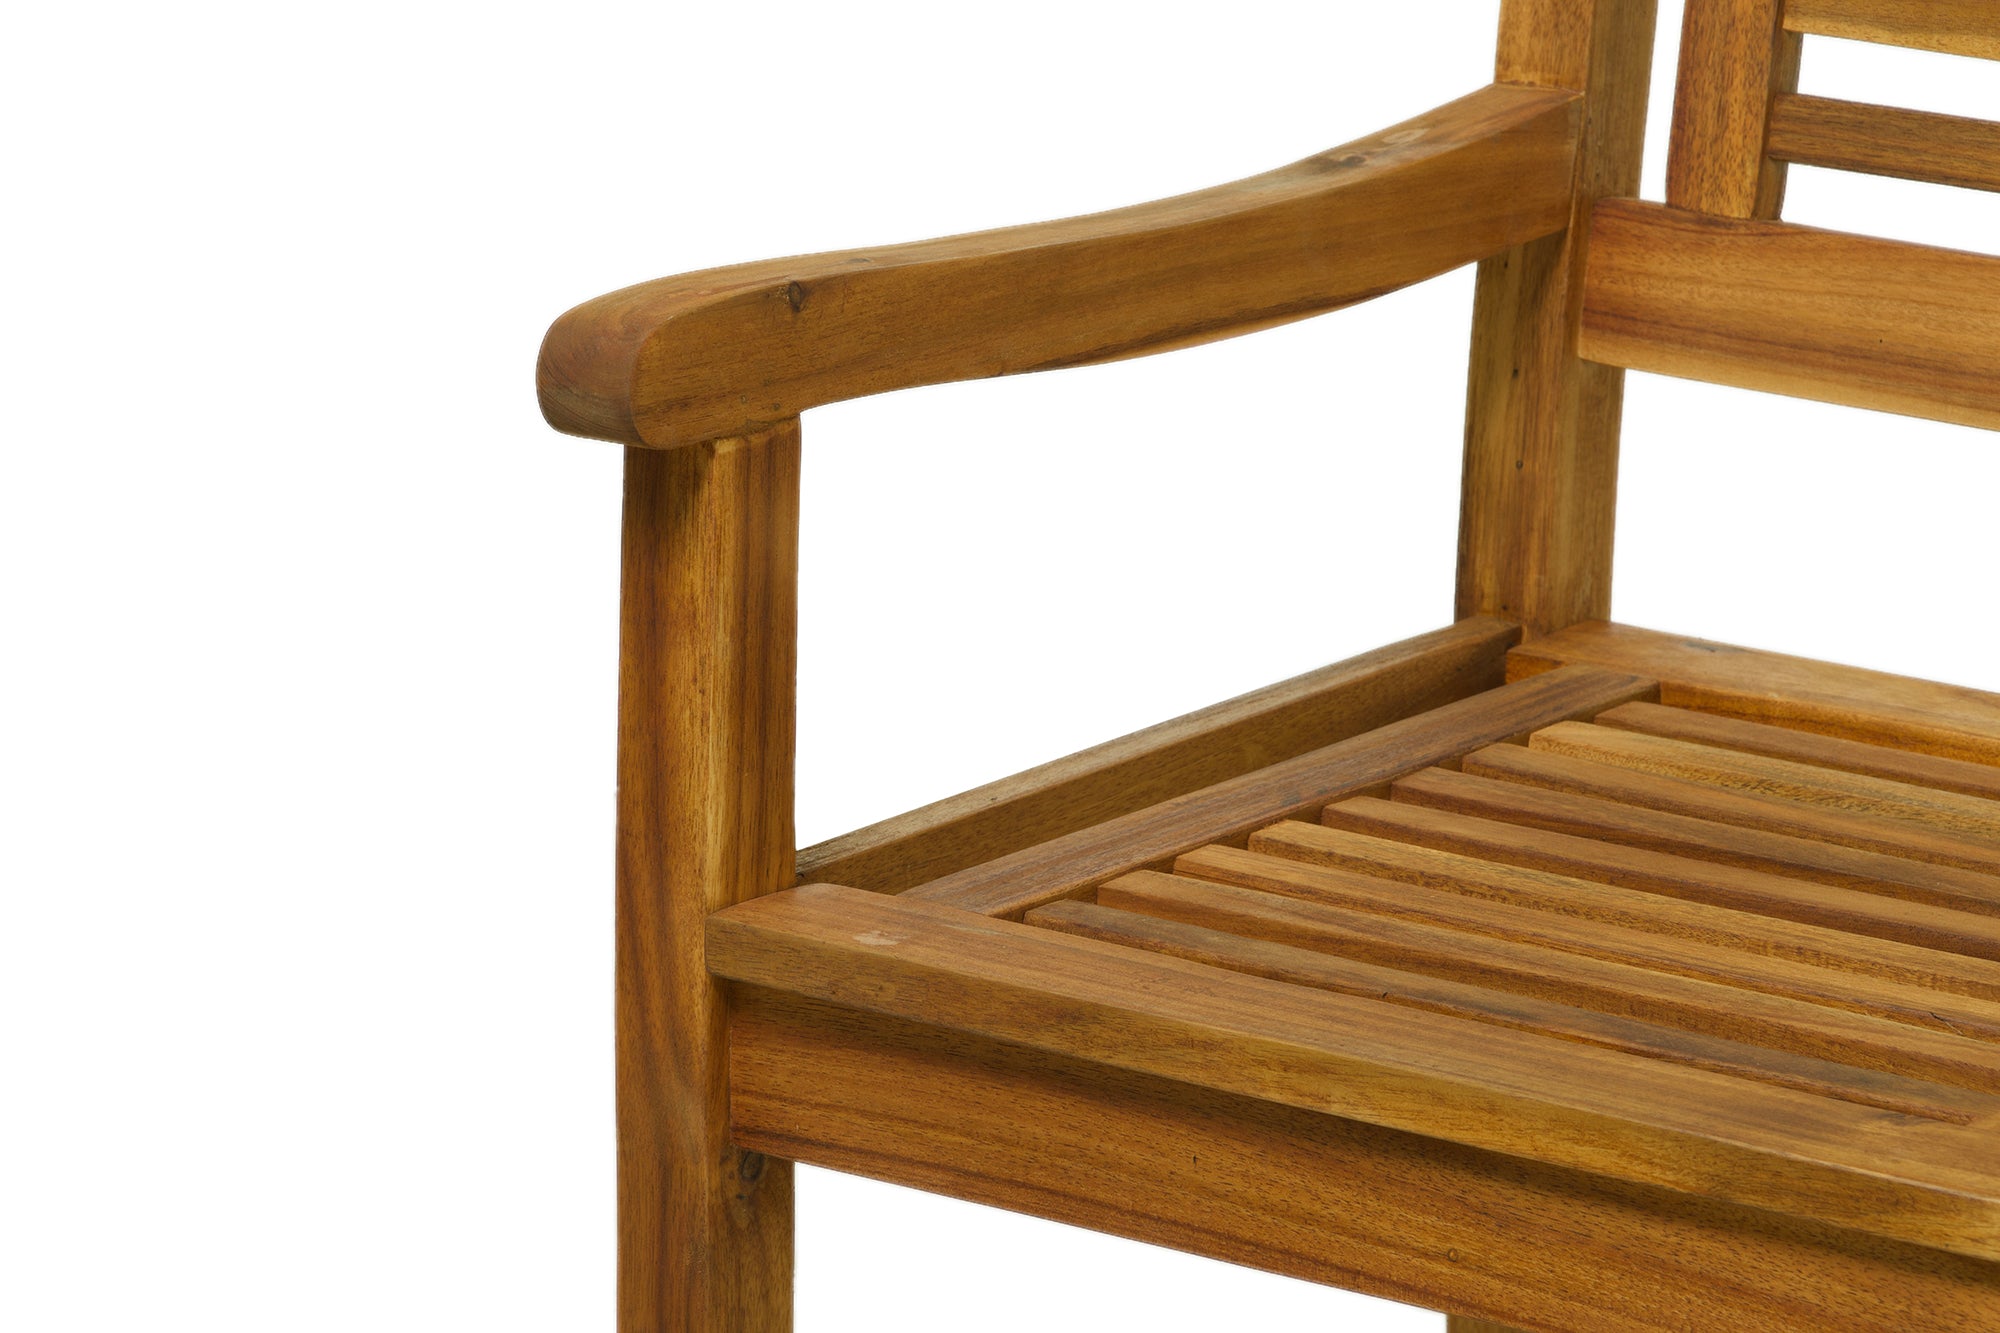 TPFGarden Sitzgruppe Akana mit 2 Stühlen, 1 Bank und 1 Tisch - 135x80 cm - Akazienholz geölt